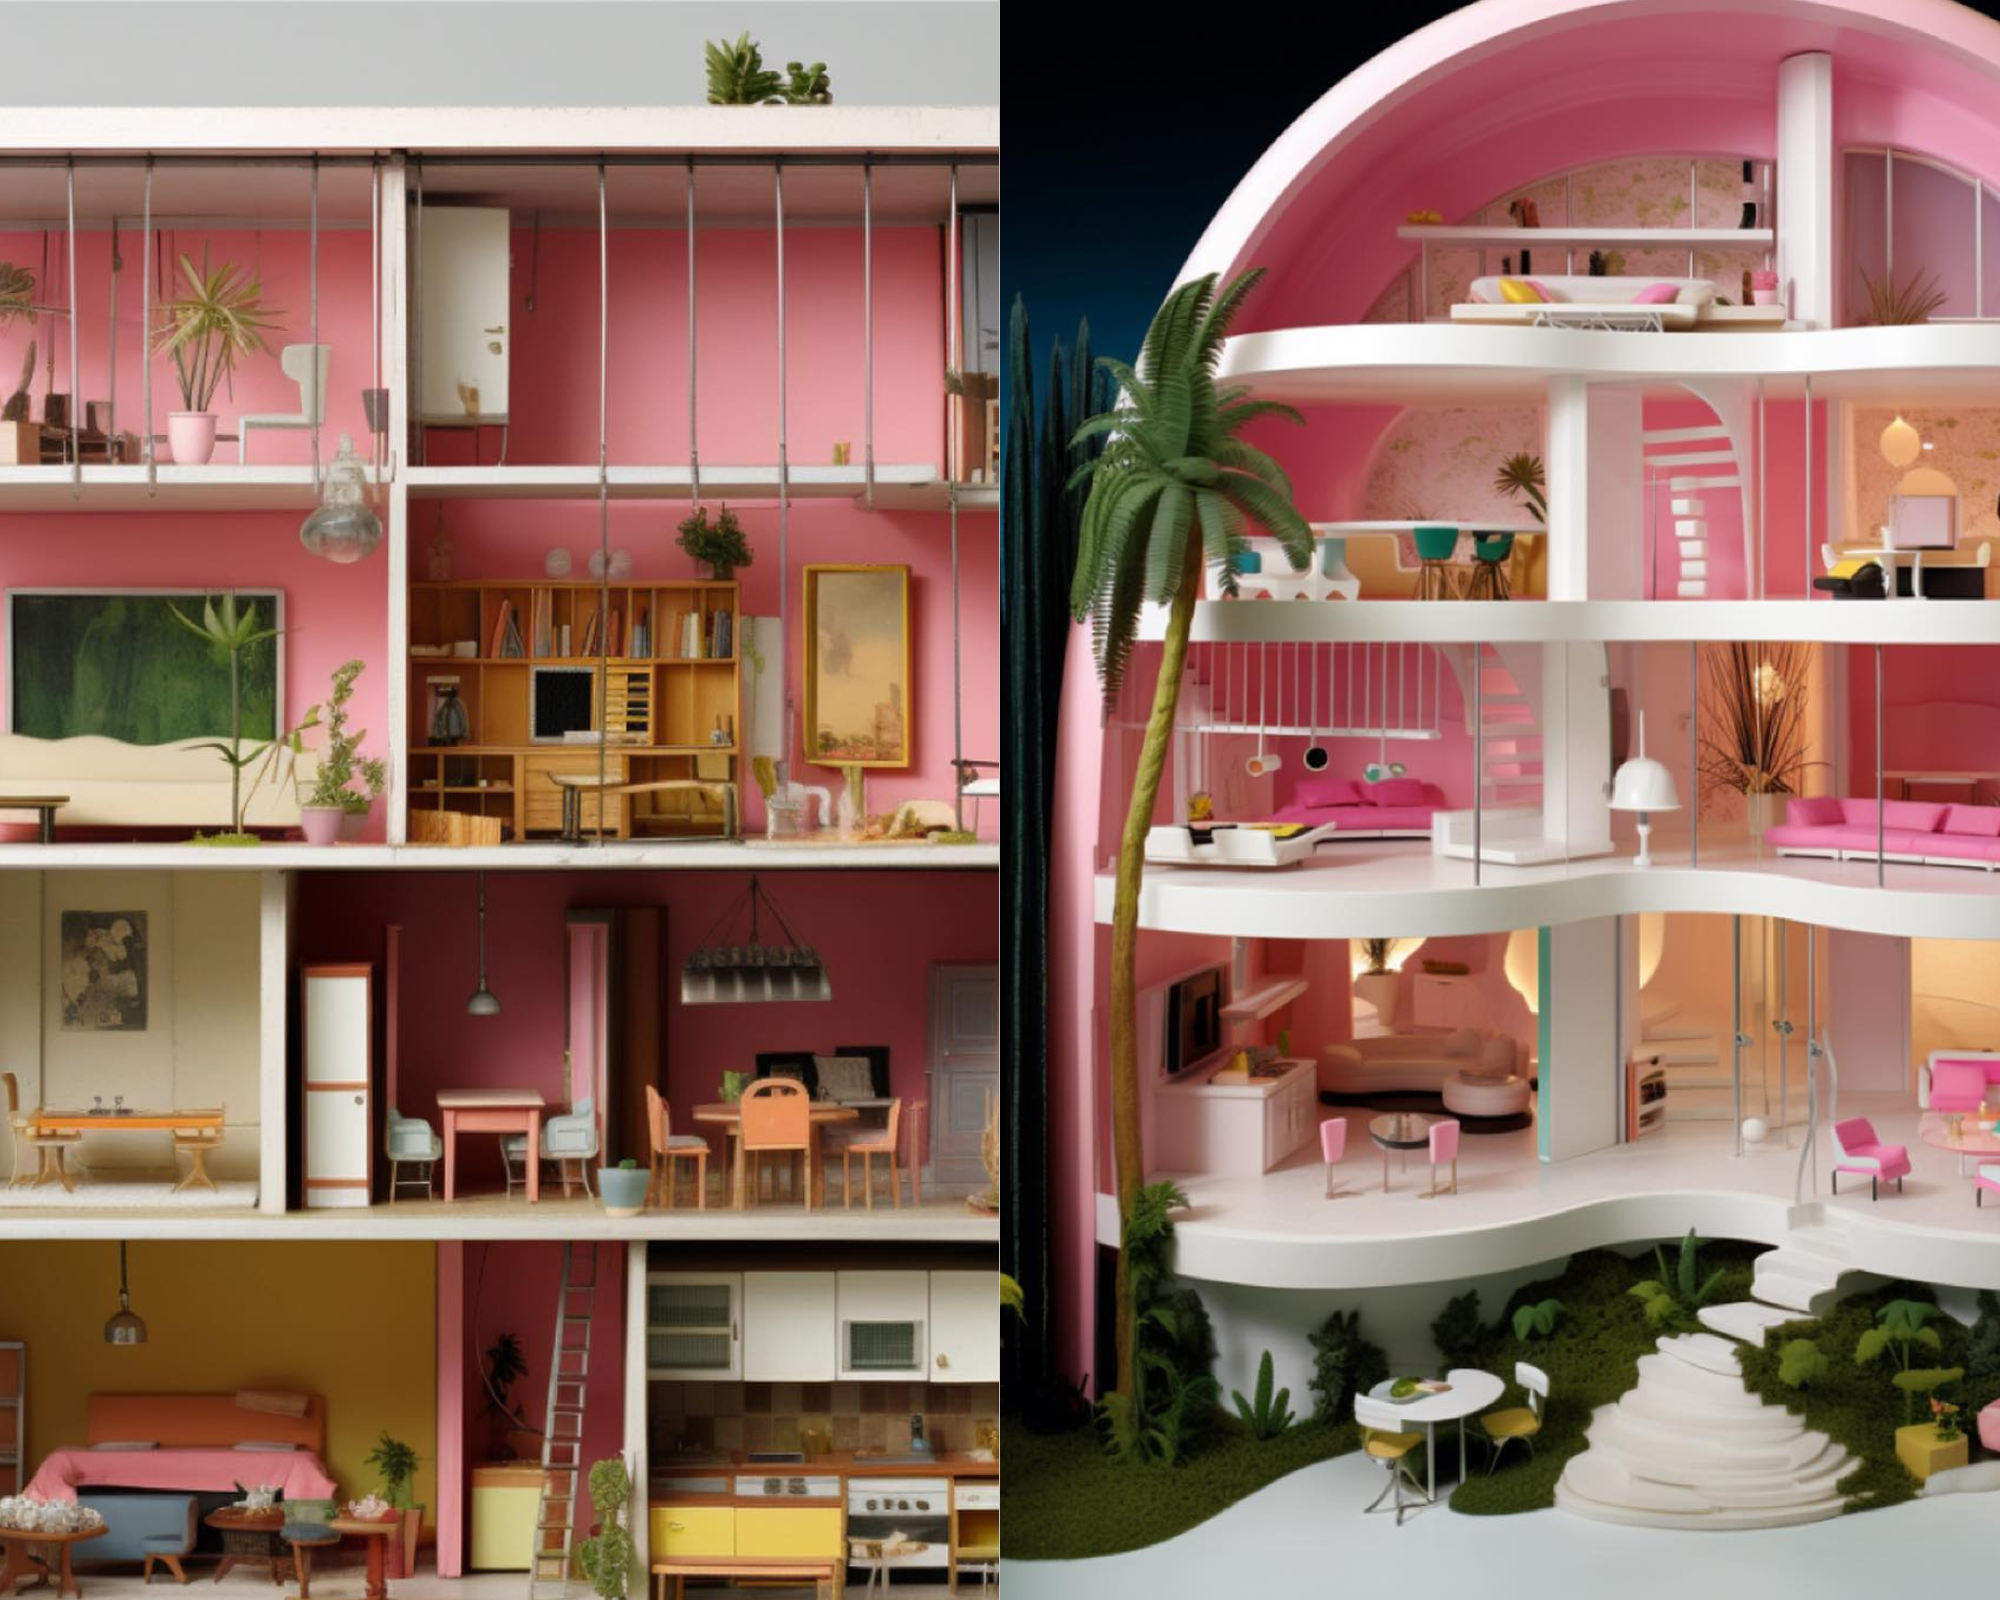 Mansões da Barbie: inteligência artificial cria casas inspiradas em países;  veja